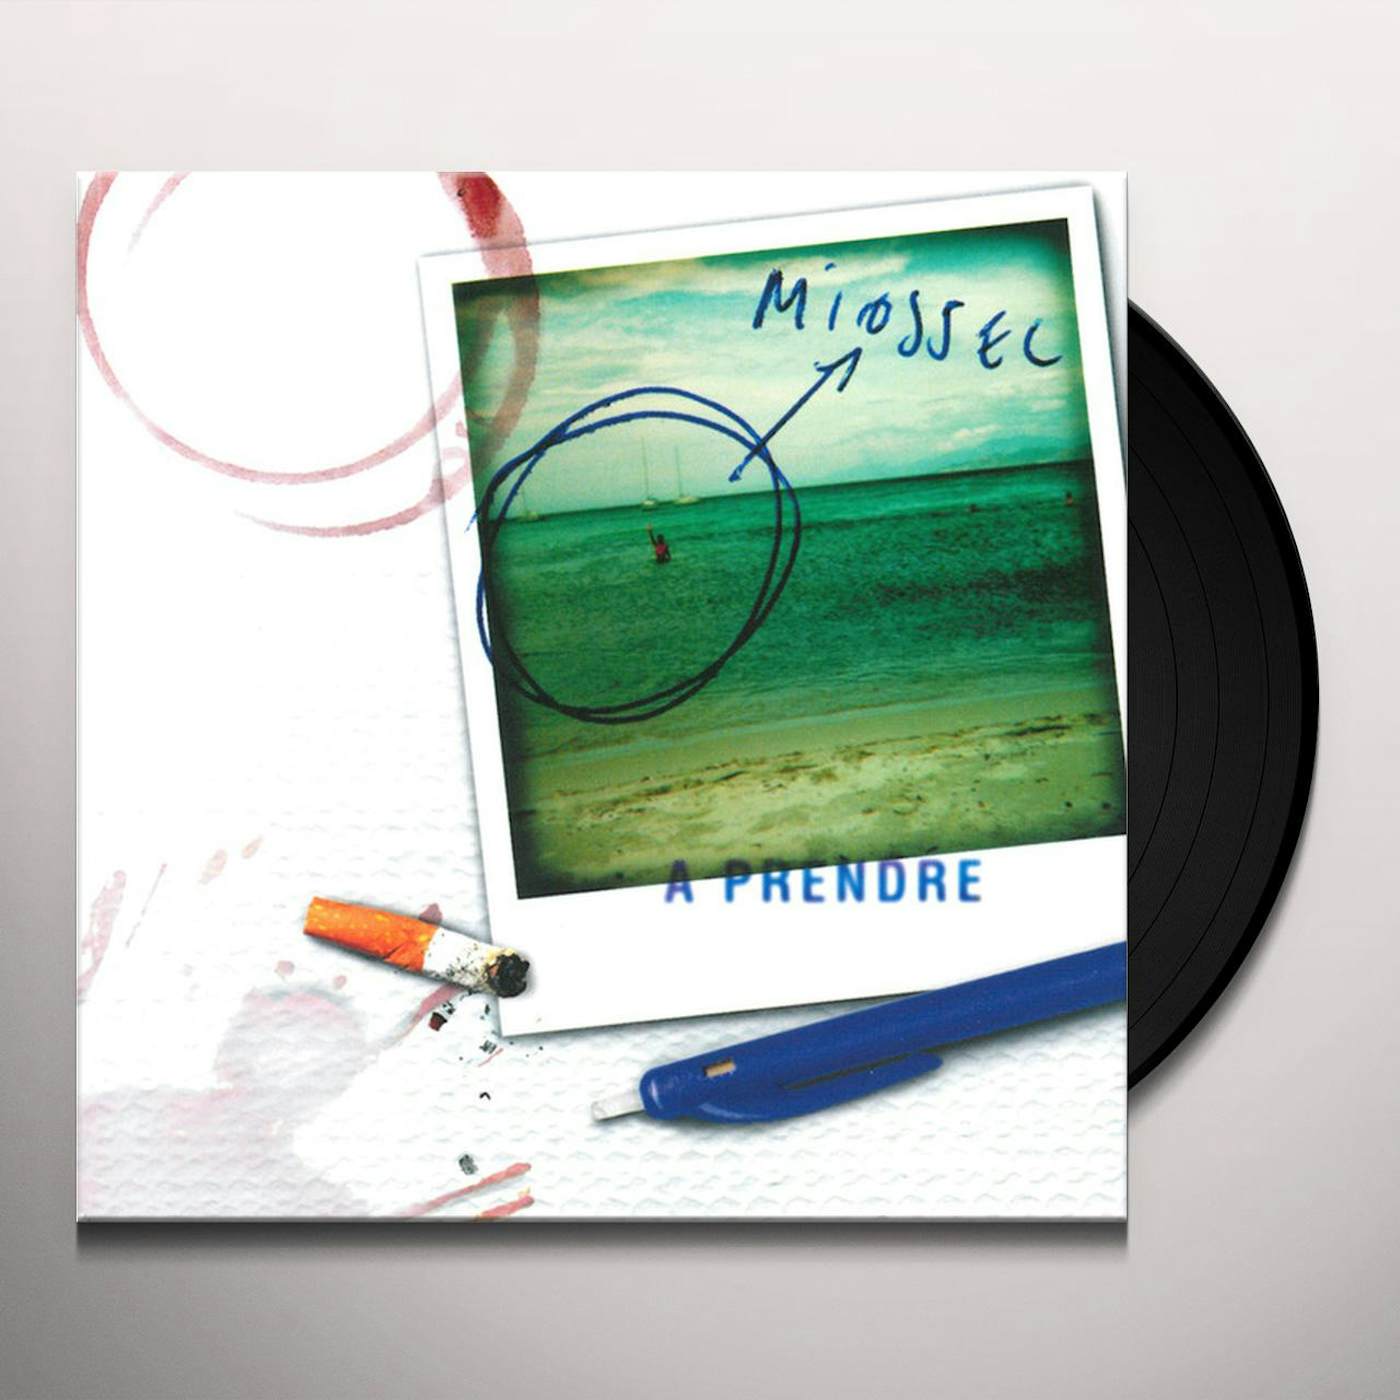 Miossec A Prendre Vinyl Record